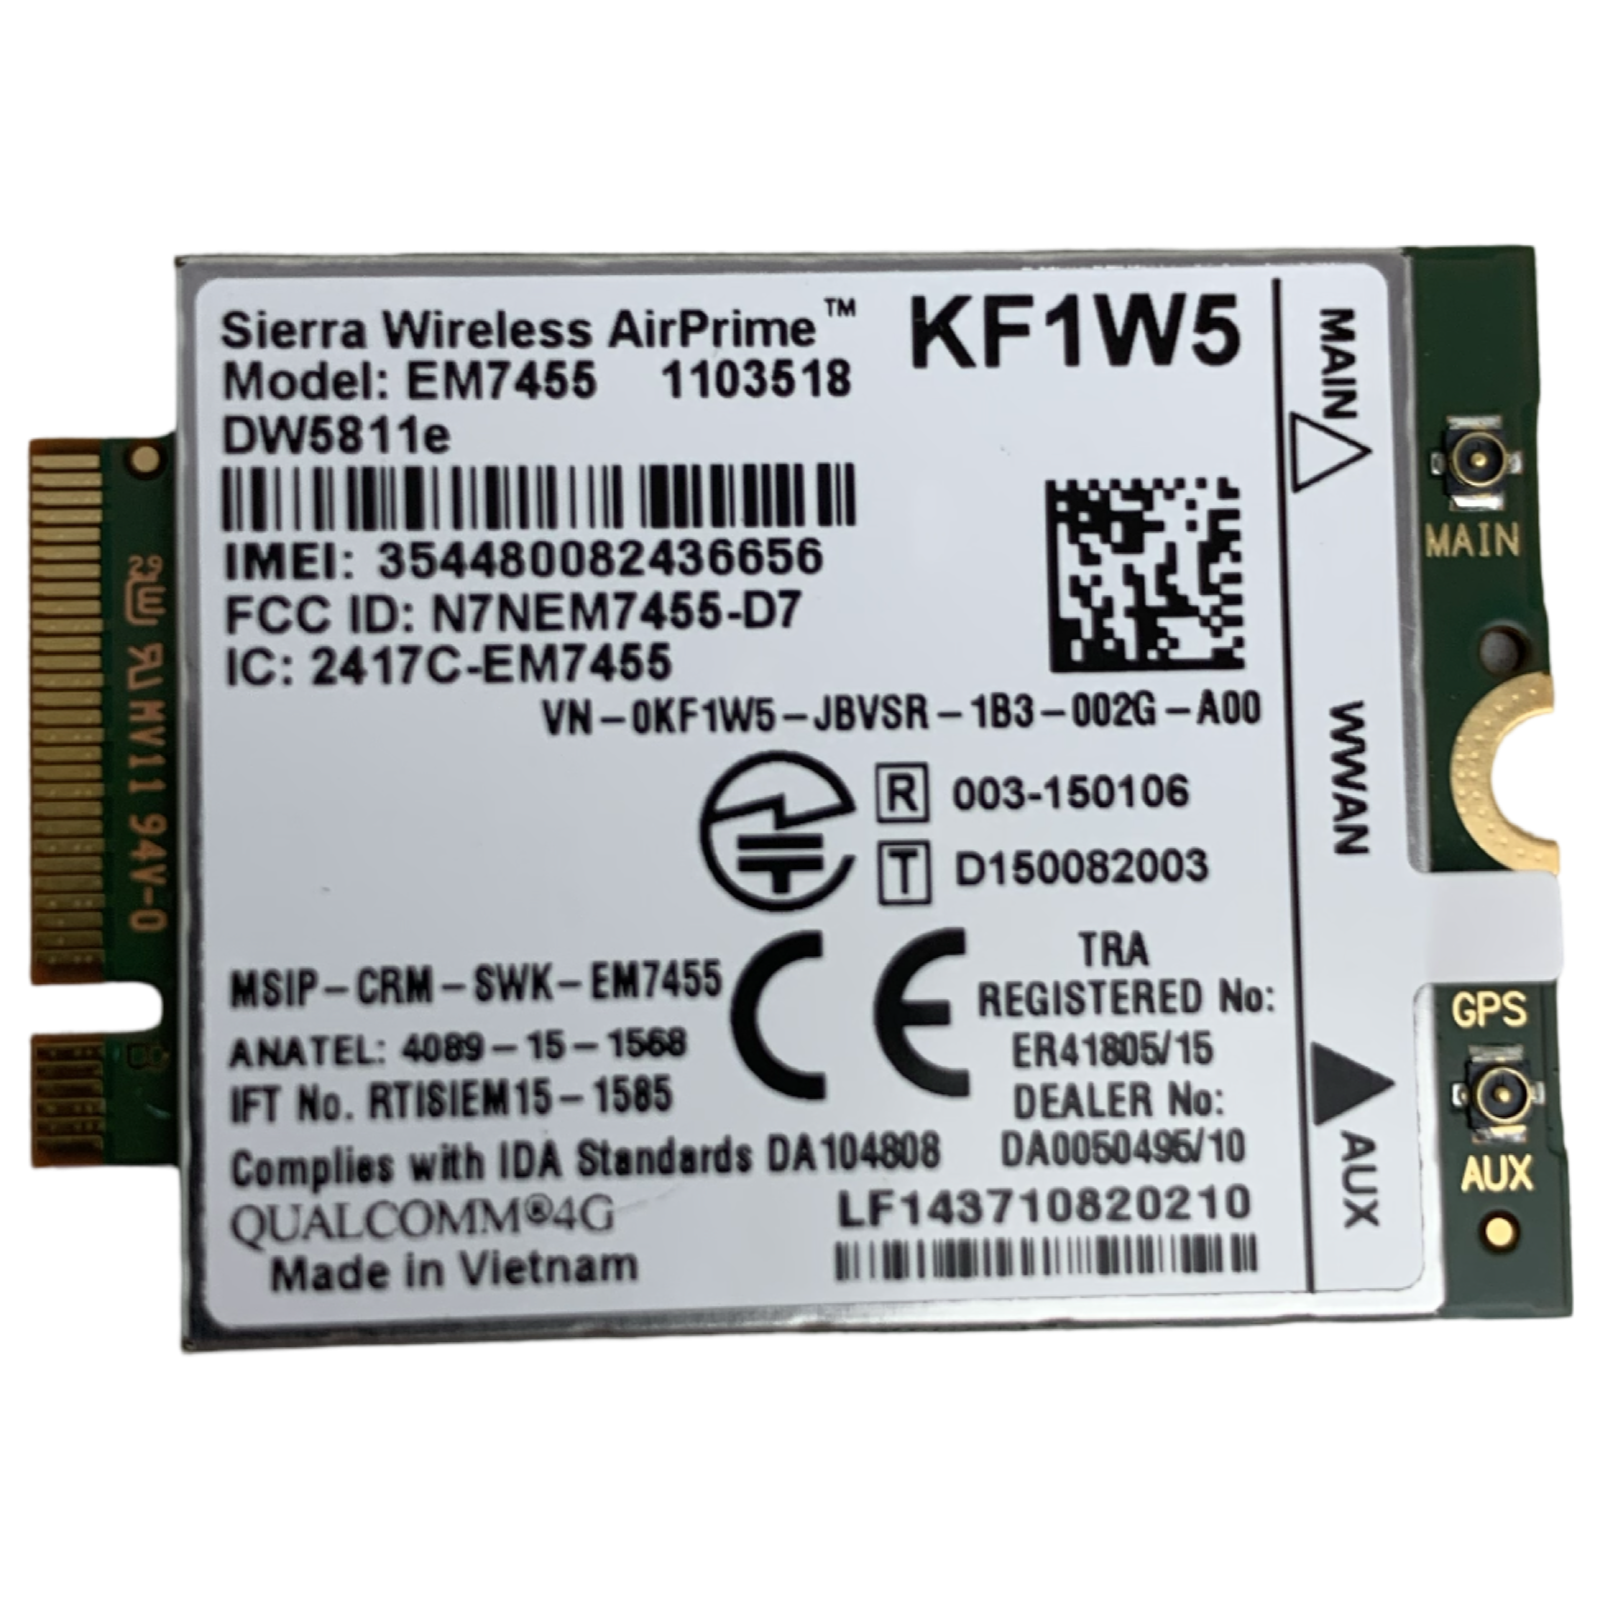  Modem WWAN 4G LTE Sierra Wireless AirPrime EM7455 DW5811e KF1W5